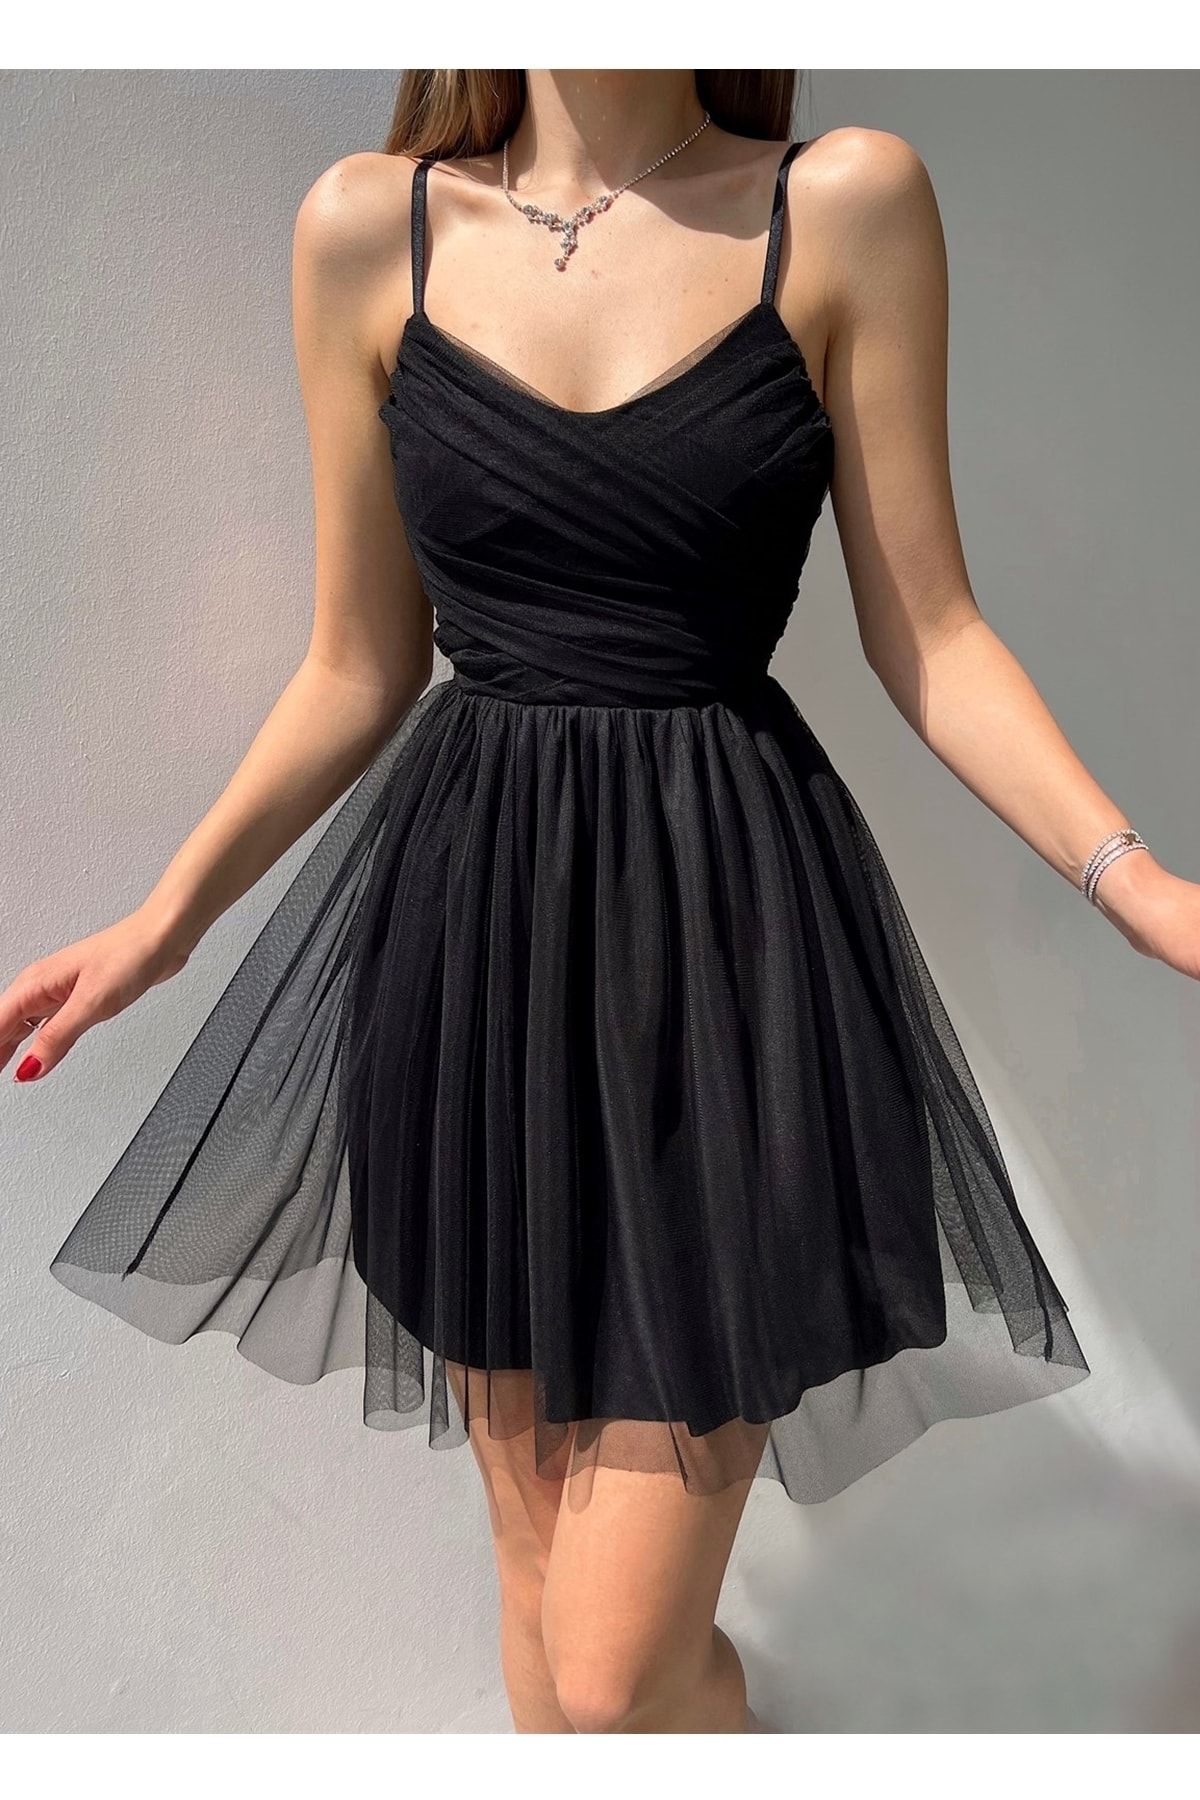 lovebox Astarlı Tül Kumaş Prenses Tasarım Siyah Abiye Elbise Siyah Mezuniyet Elbisesi 139